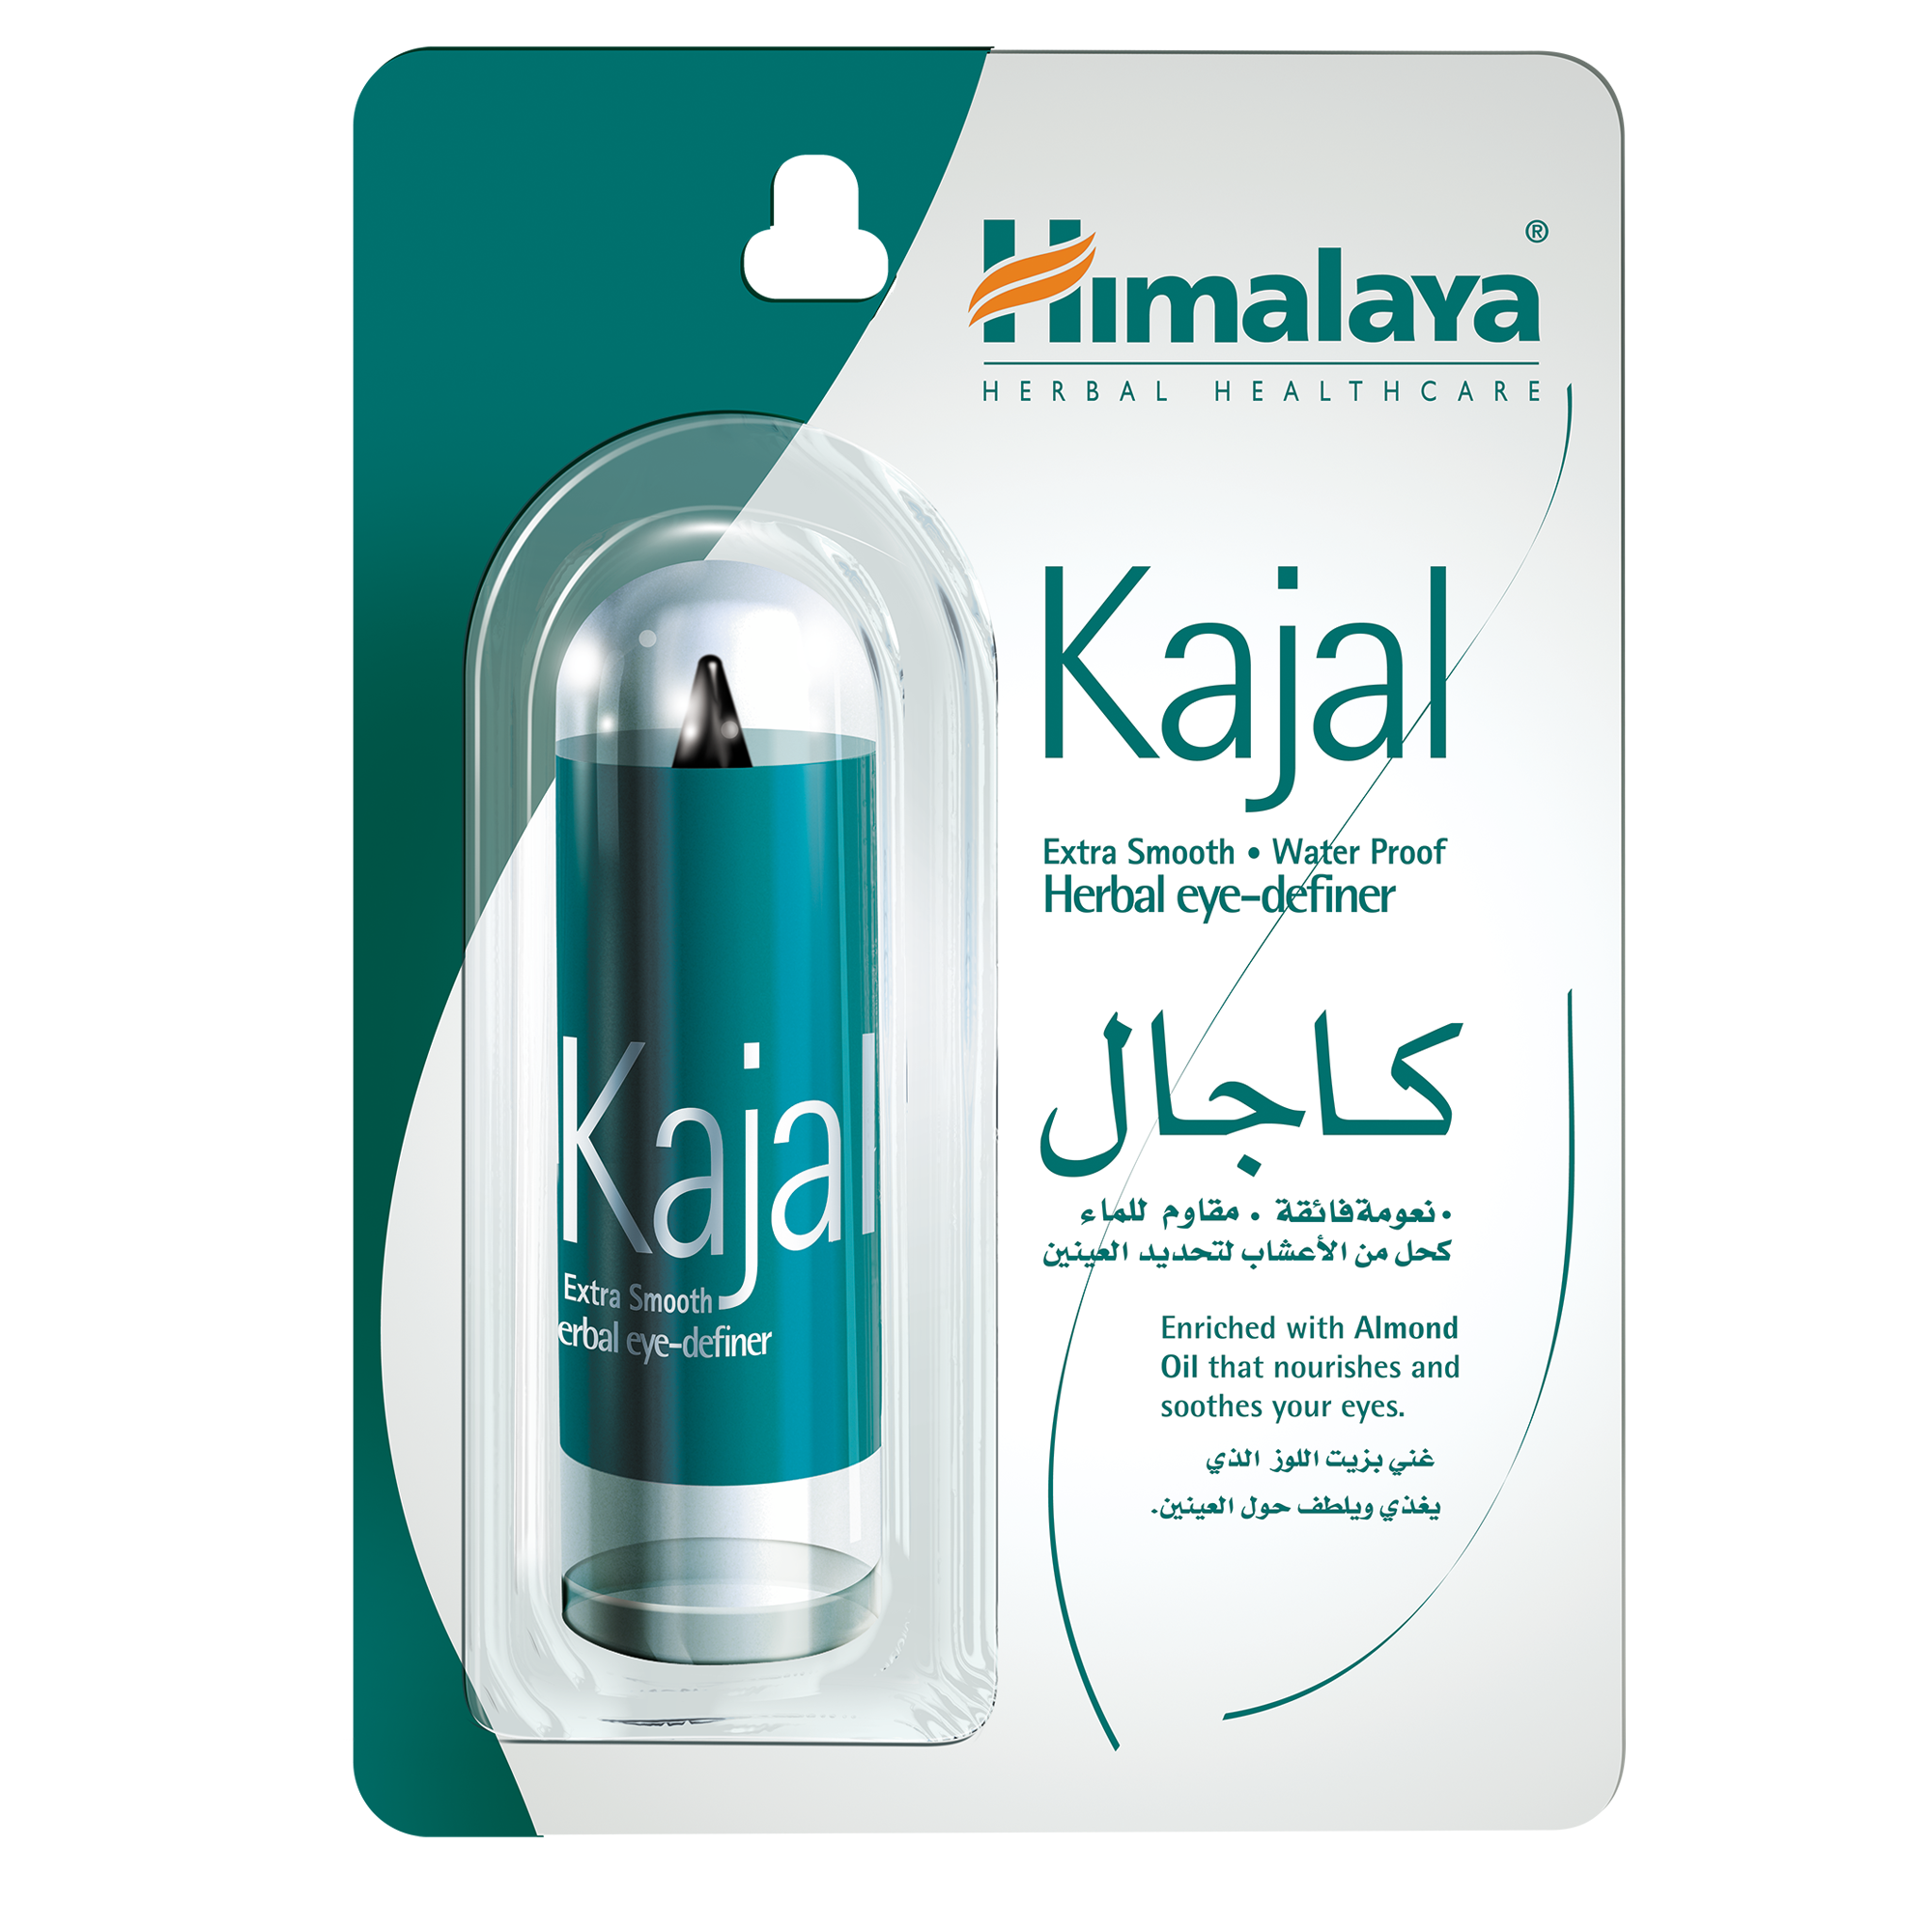 Himalaya Kajal - Extra Smooth, Water Proof Herbal Eye Definer